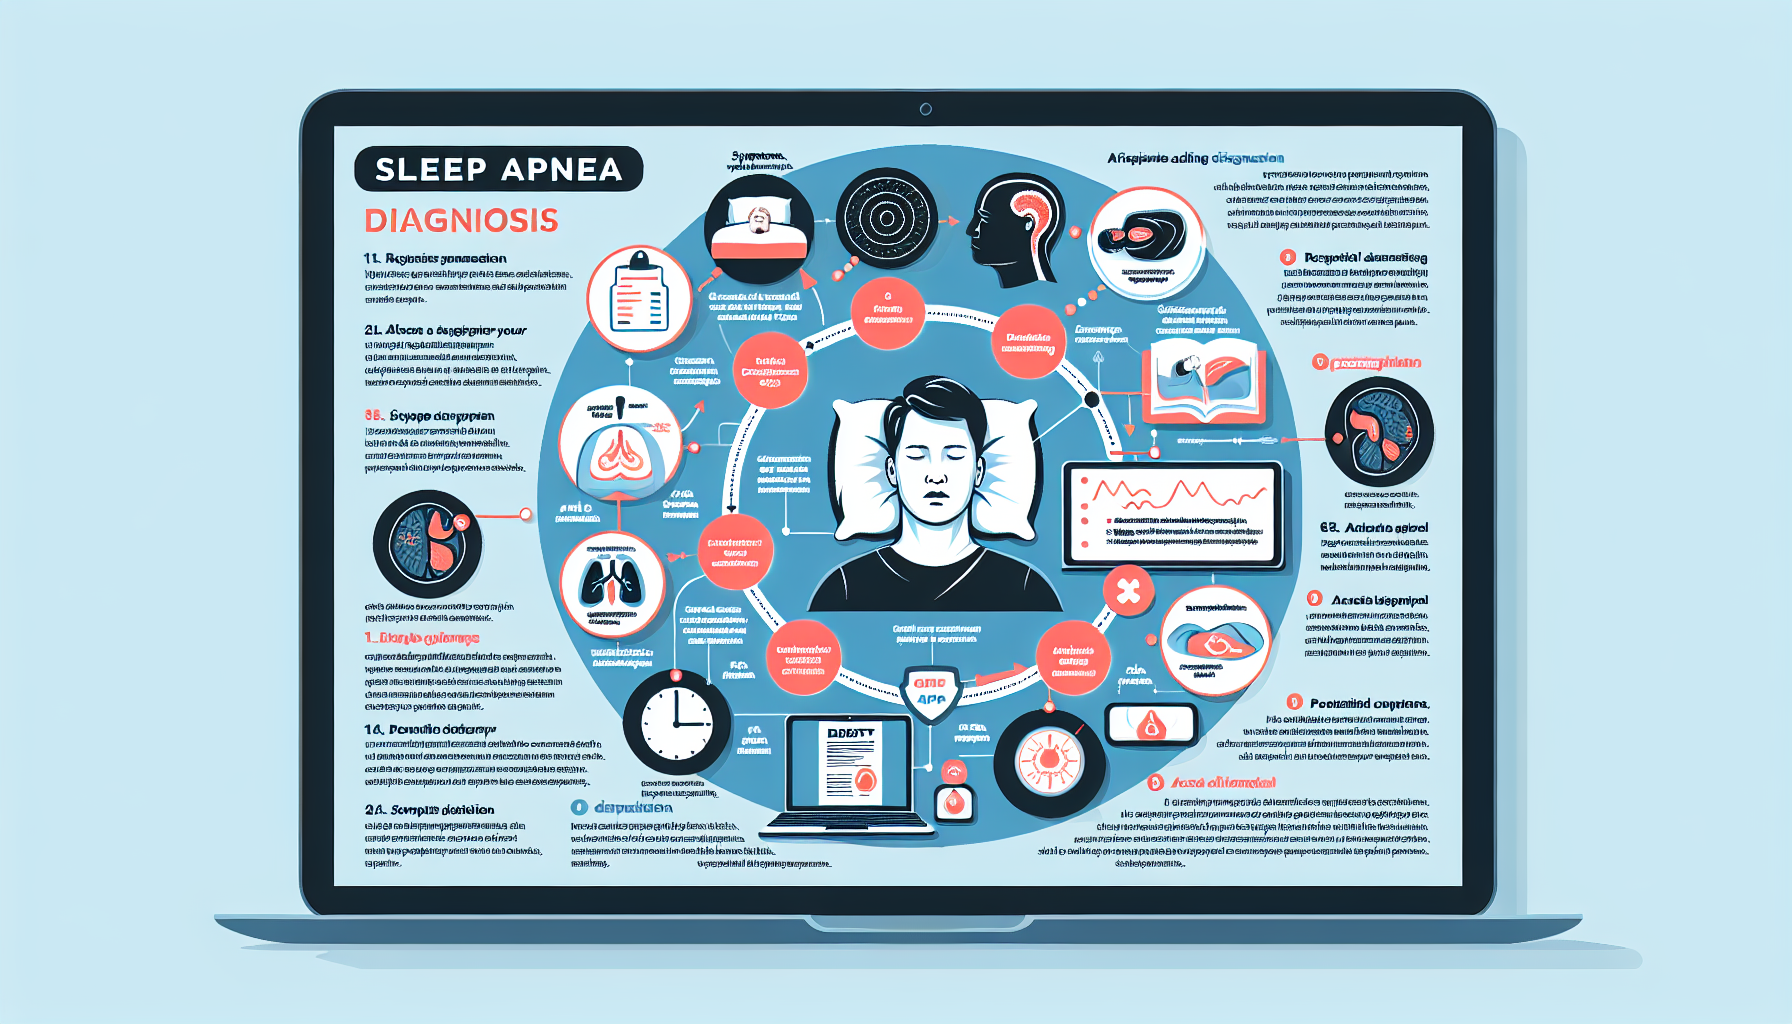 Diagnosis Of Sleep Apnea